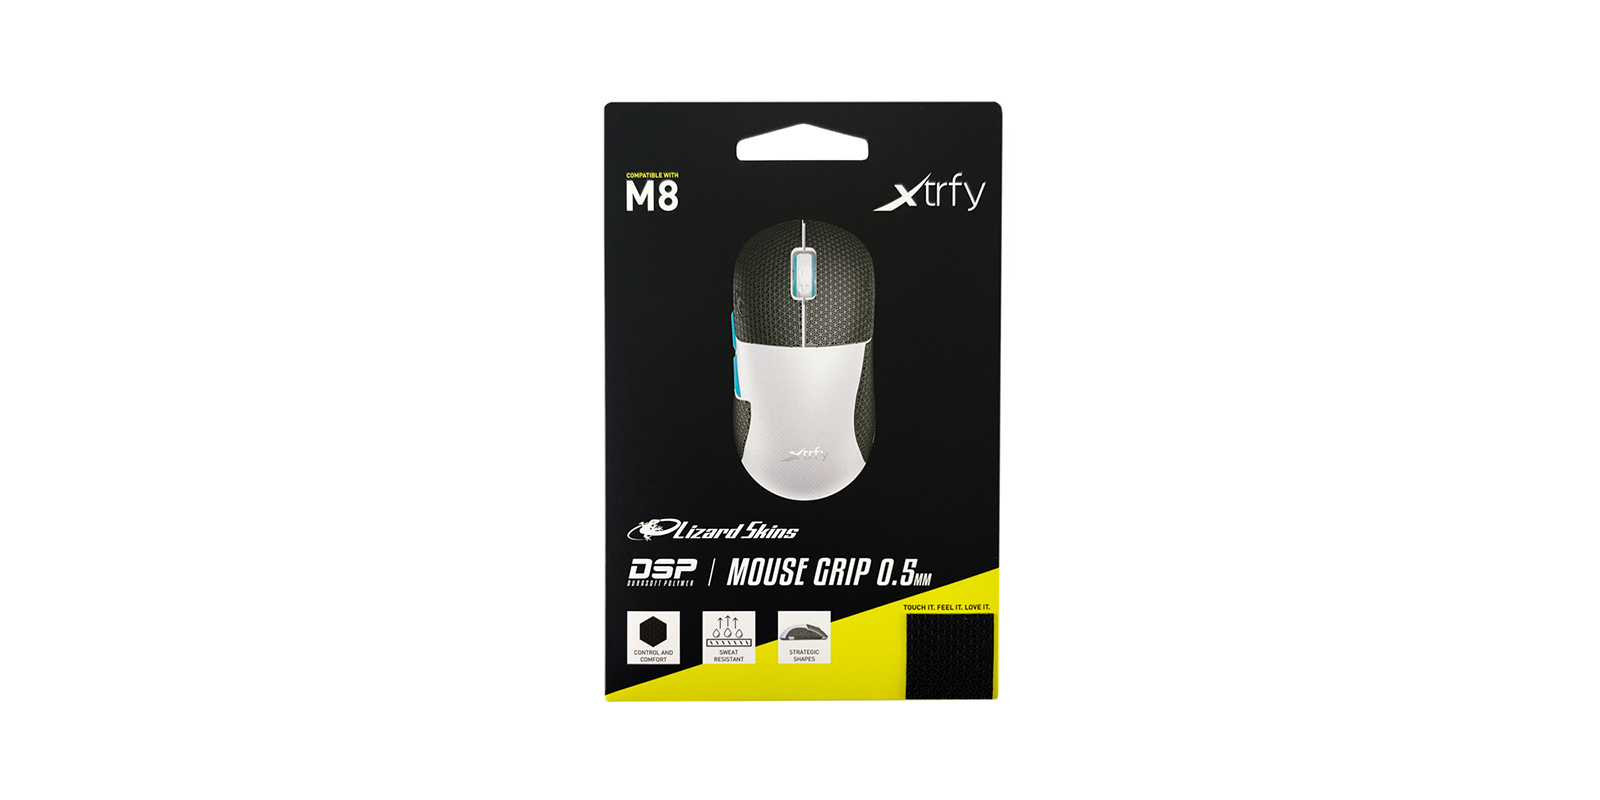 Xtrfy M8 wireless + Lizard Skins DSP 美品